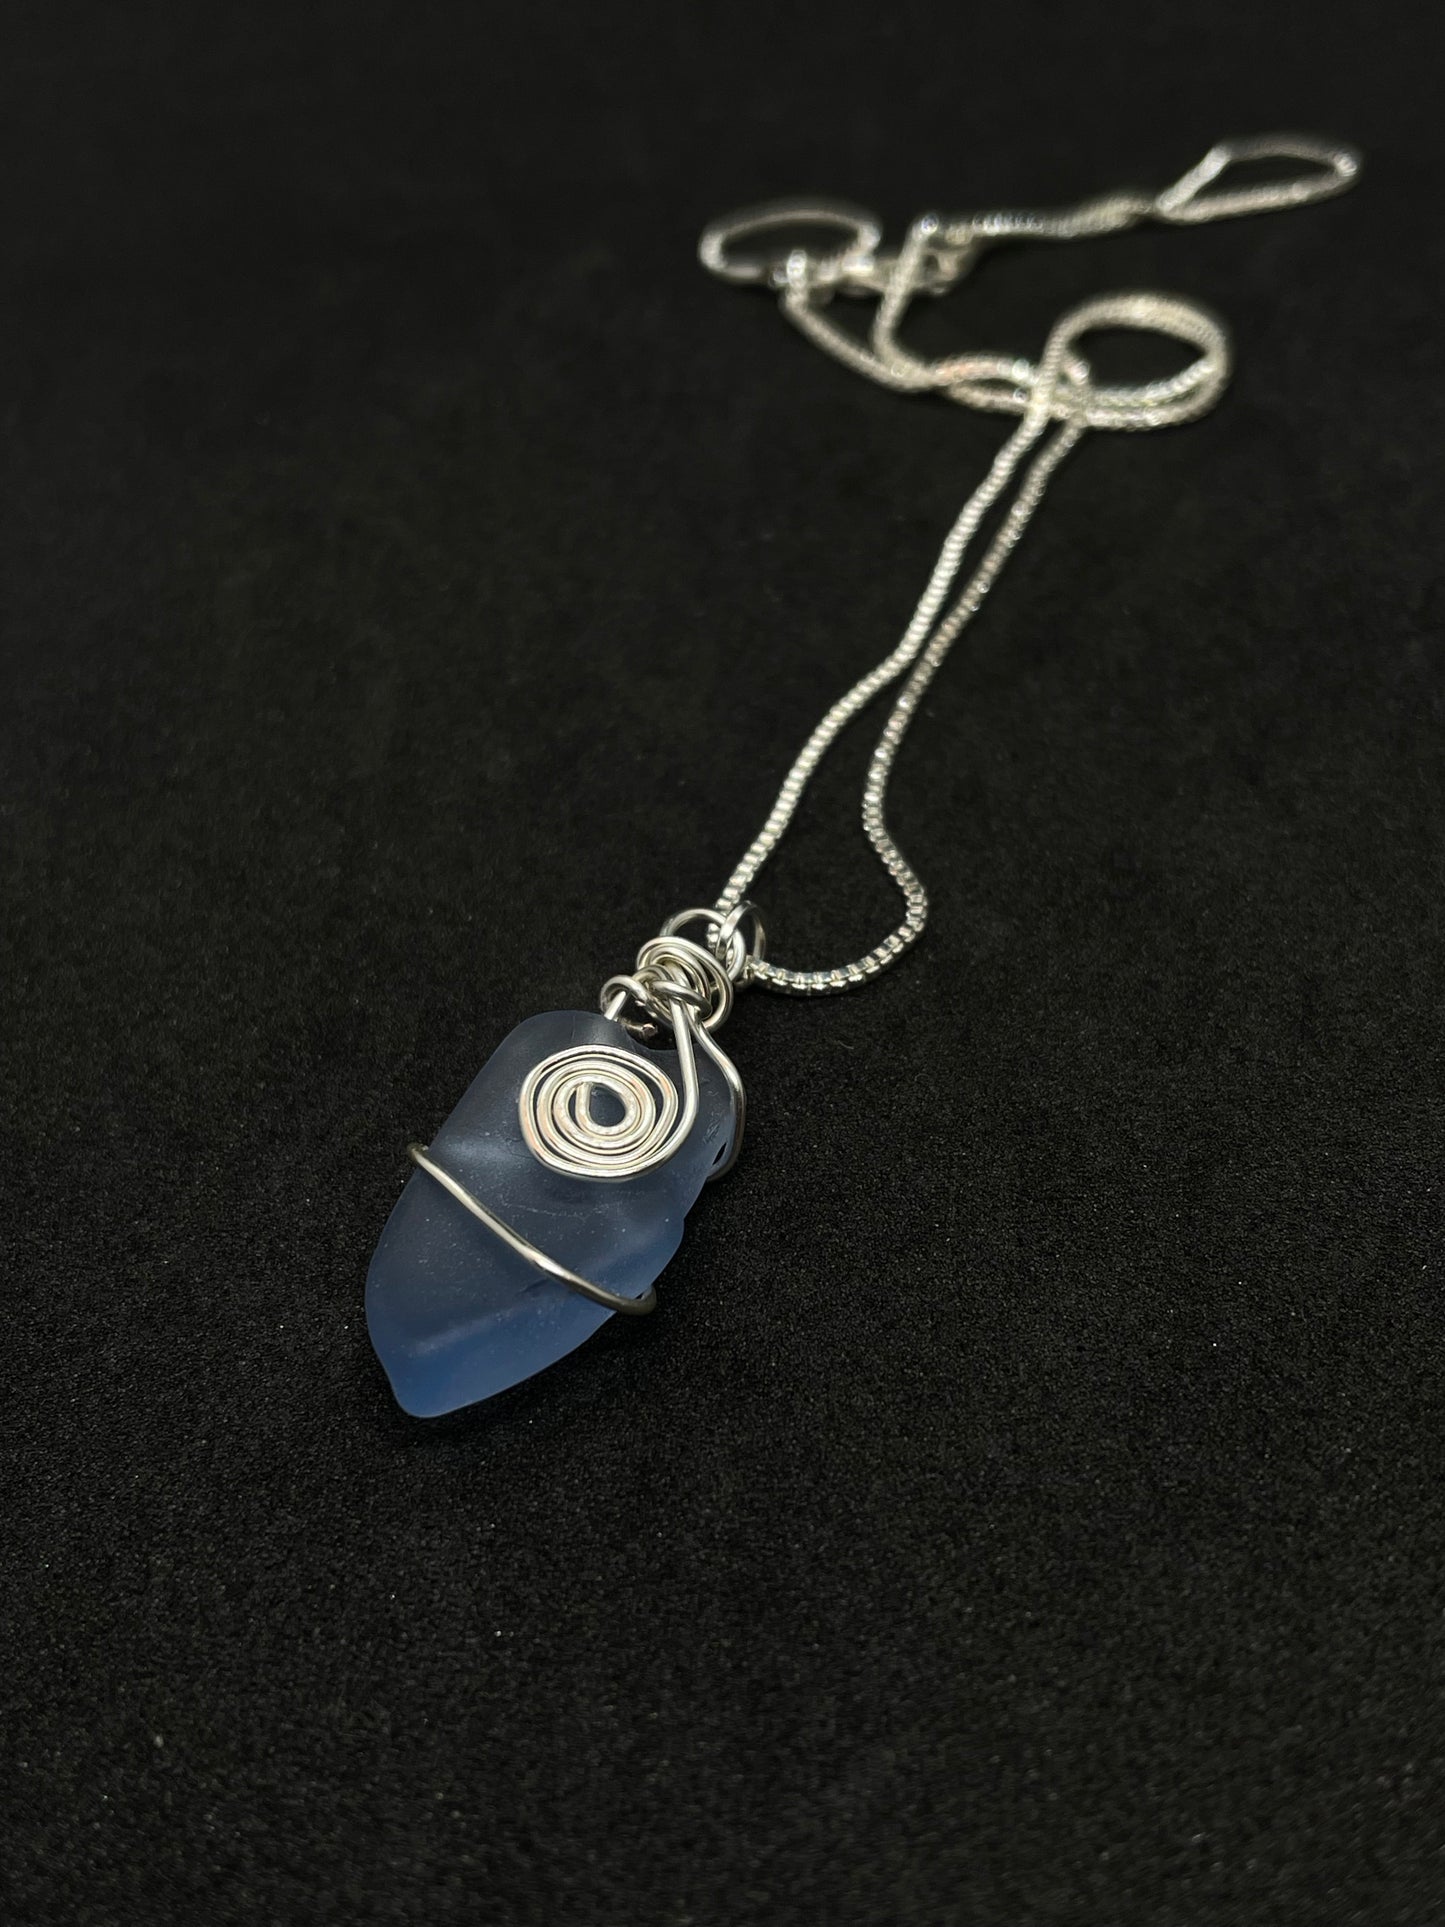 Pale blue seaglass necklace